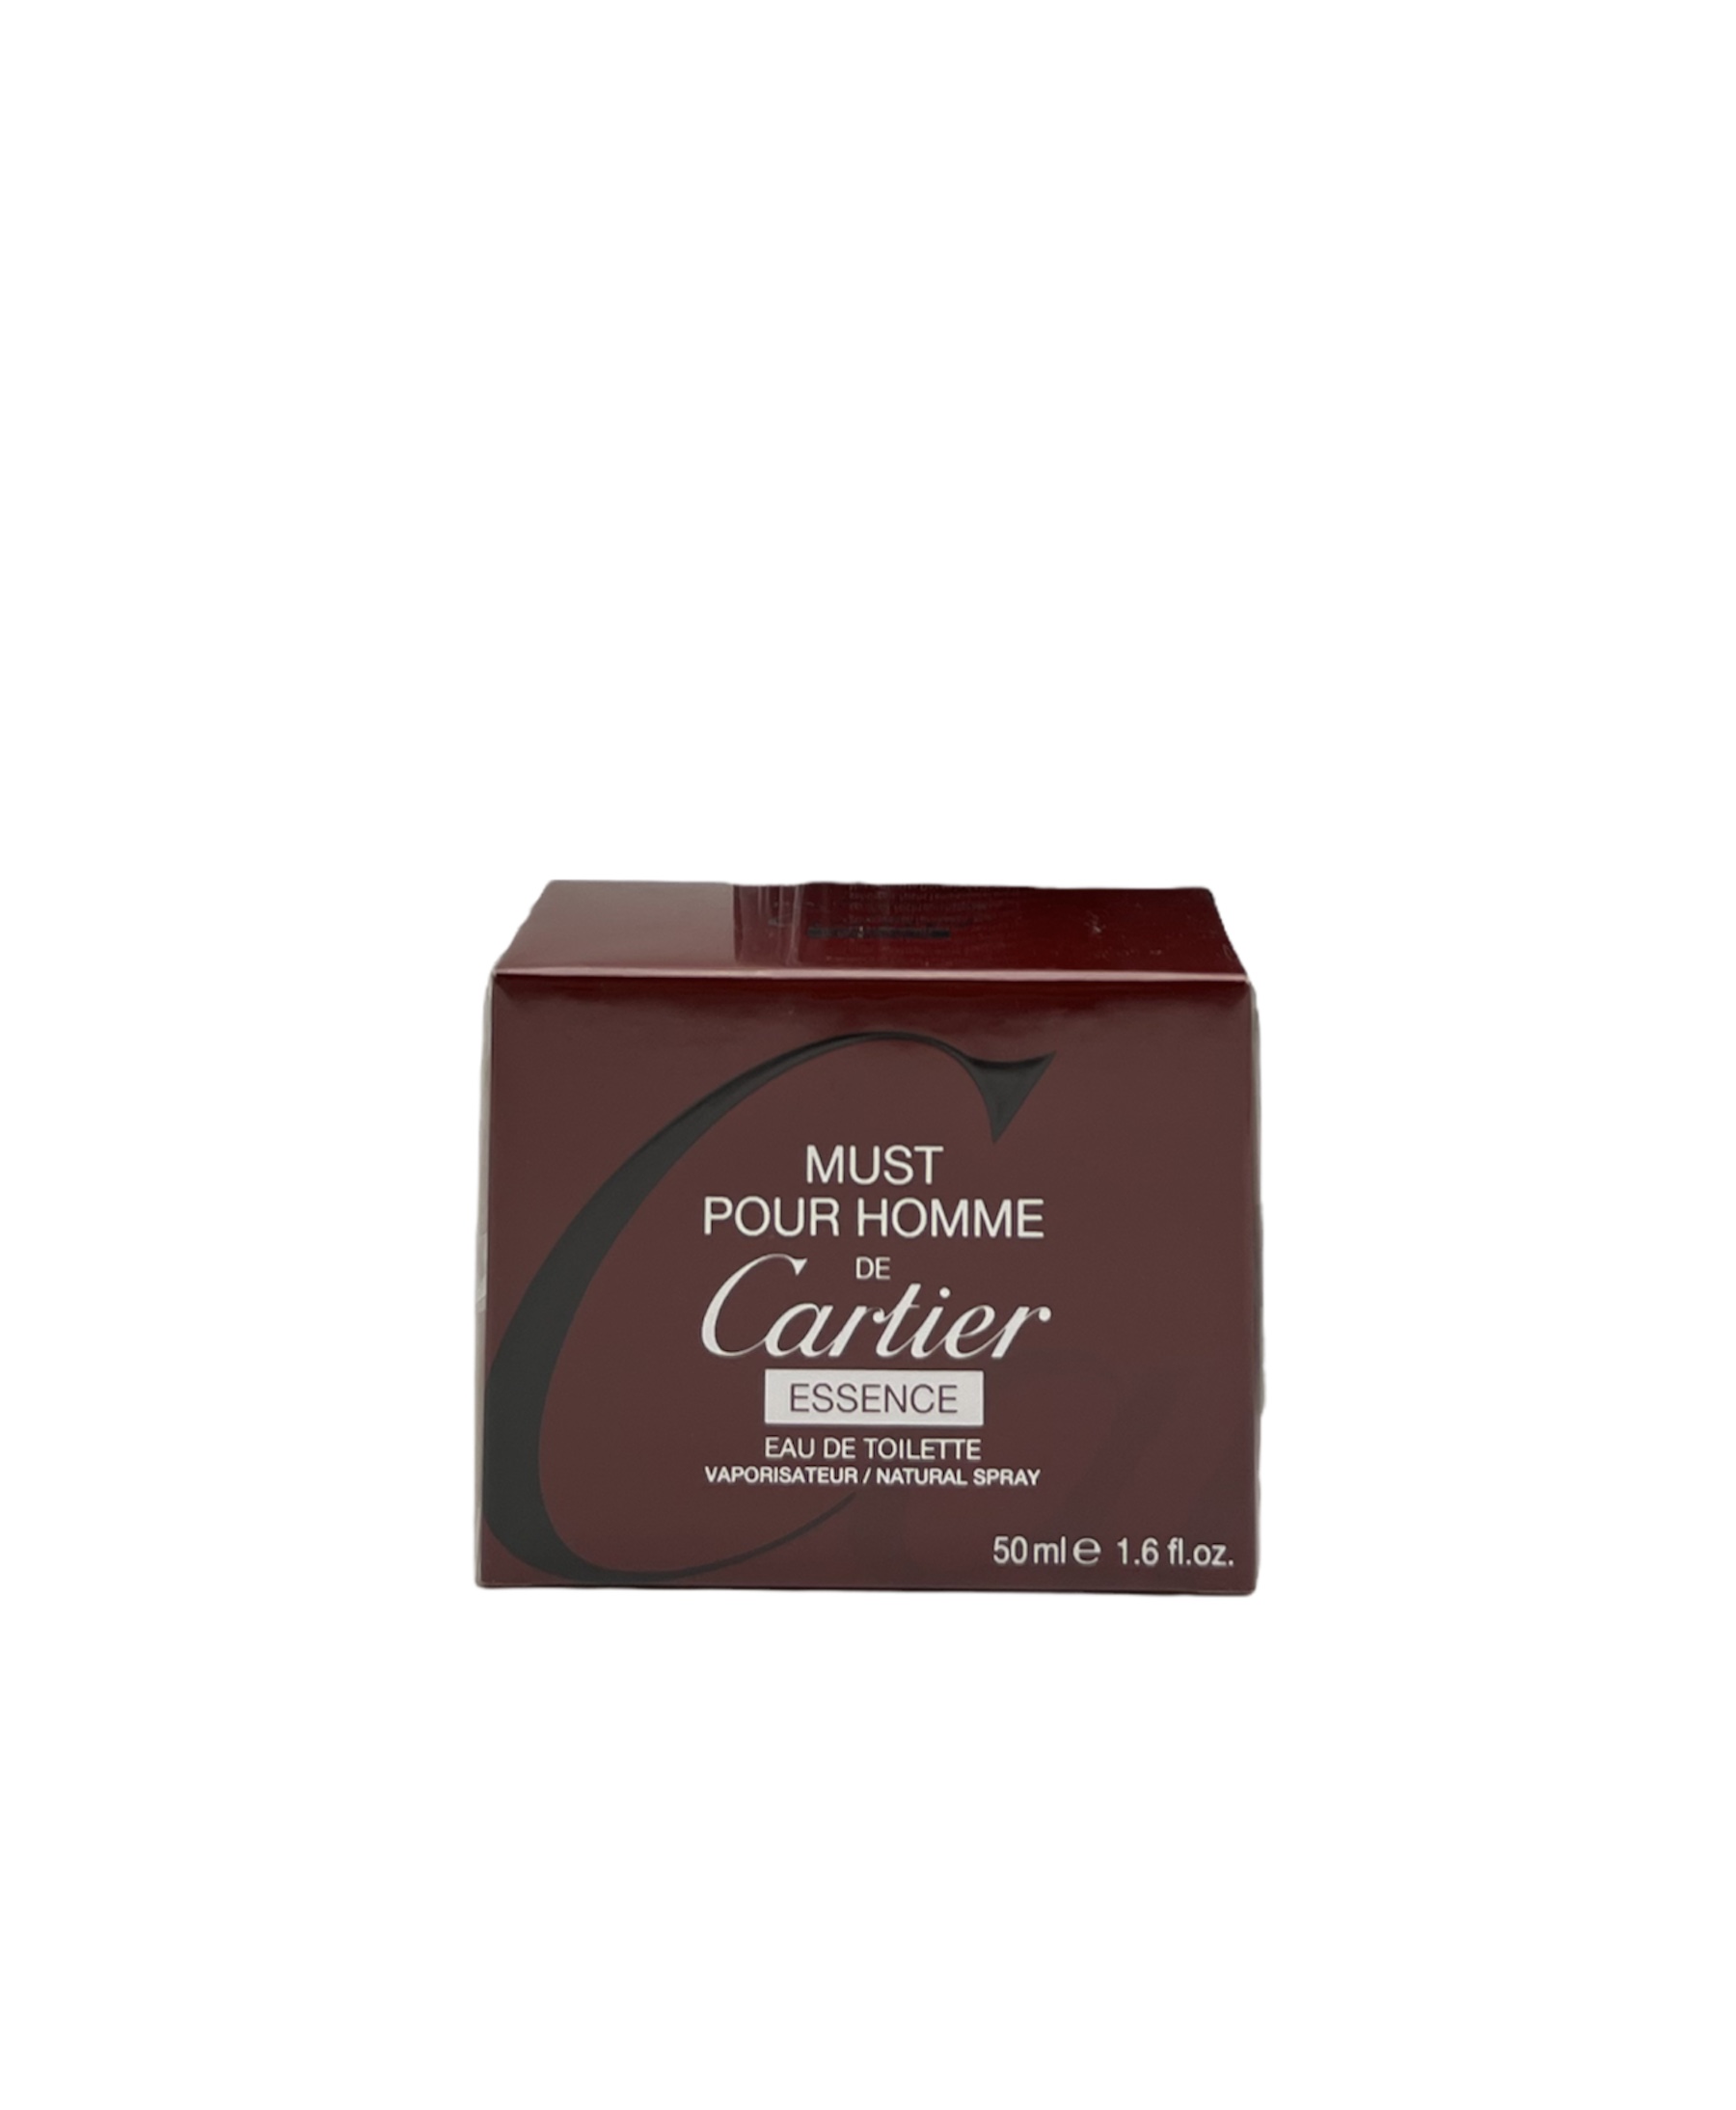 Cartier - Must pour Homme ESSENCE Eau de Tolilette 50ml